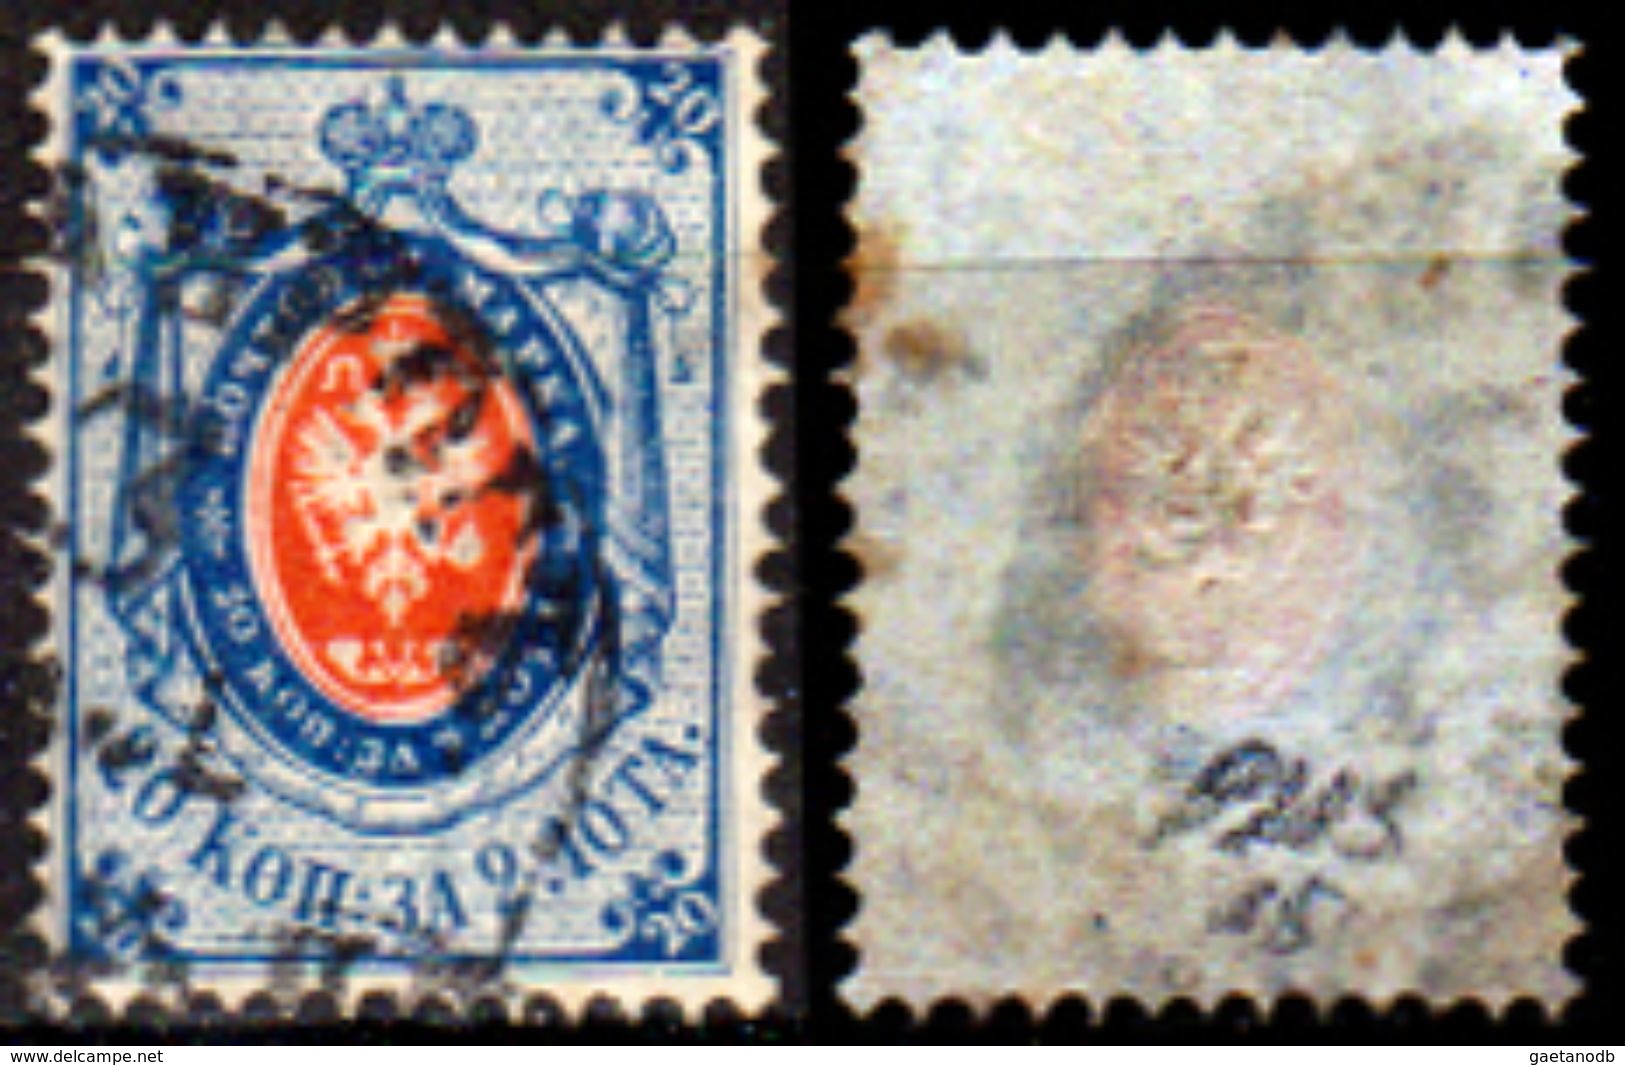 Russia-00165 - 1865:Y&T N. 15 (o) Used - Senza Difetti Occulti. - Usati